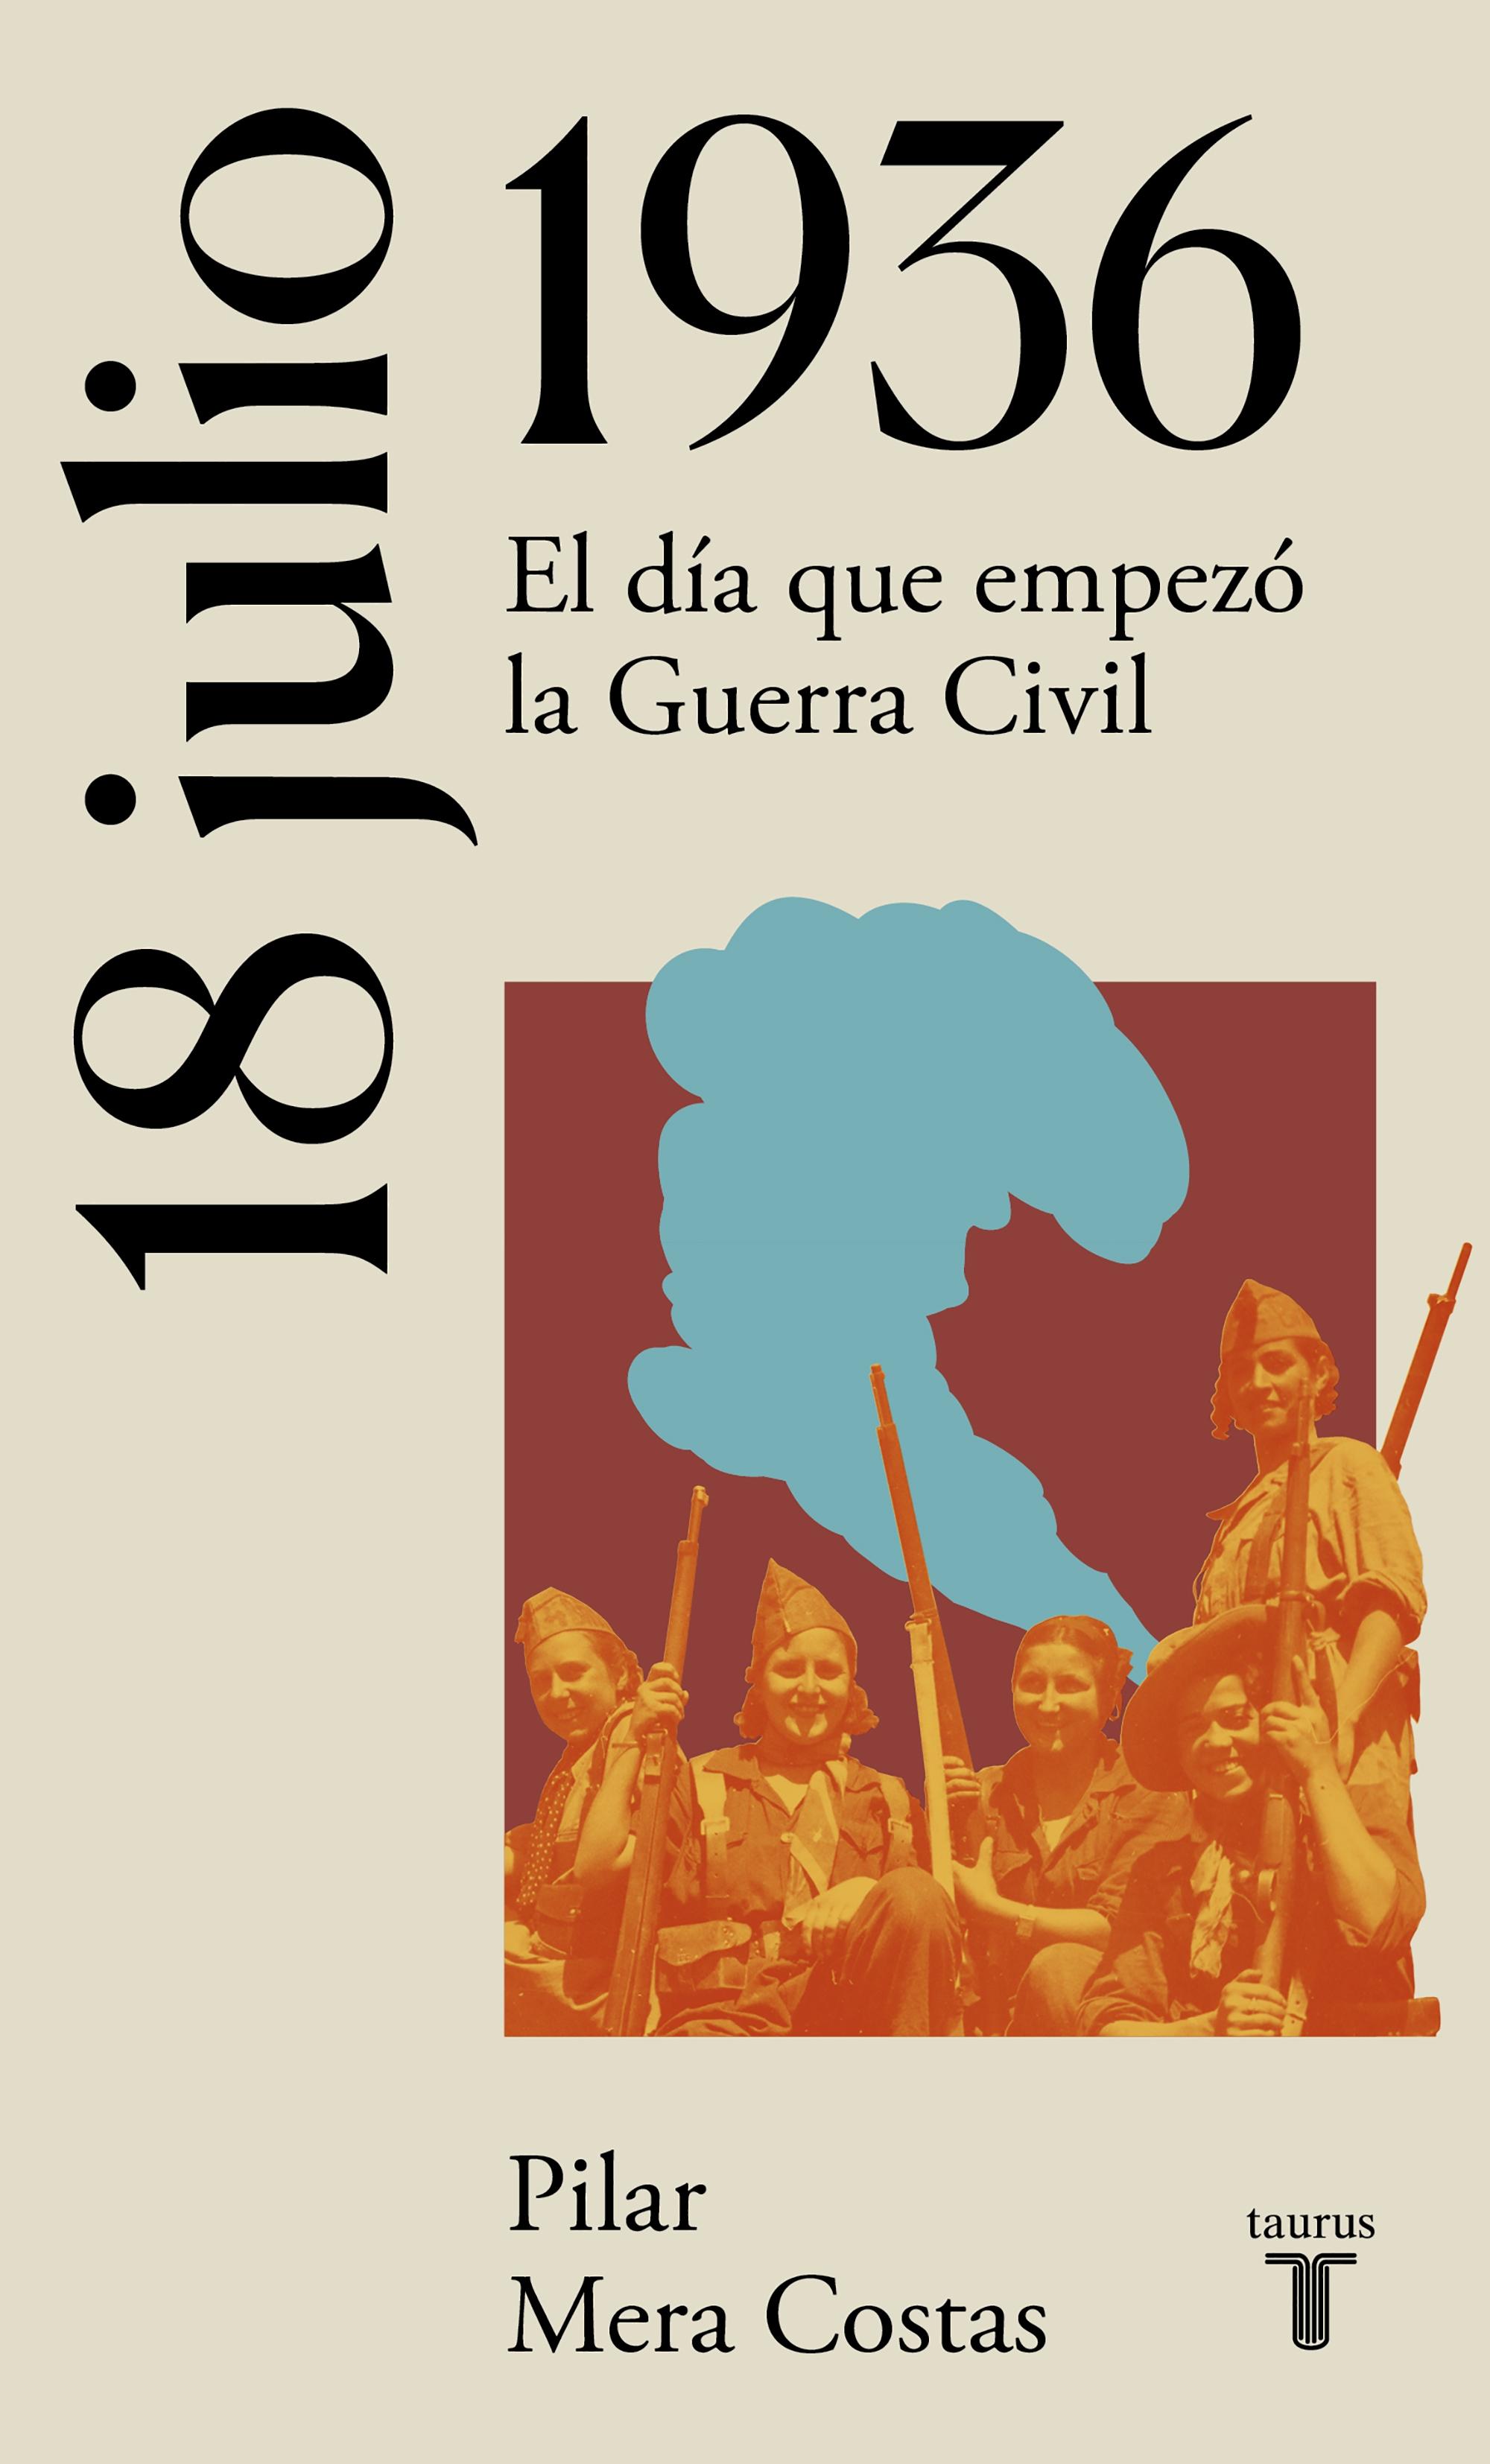 18 de julio de 1936. La España del siglo XX en siete días "El día que empezó la Guerra Civil"